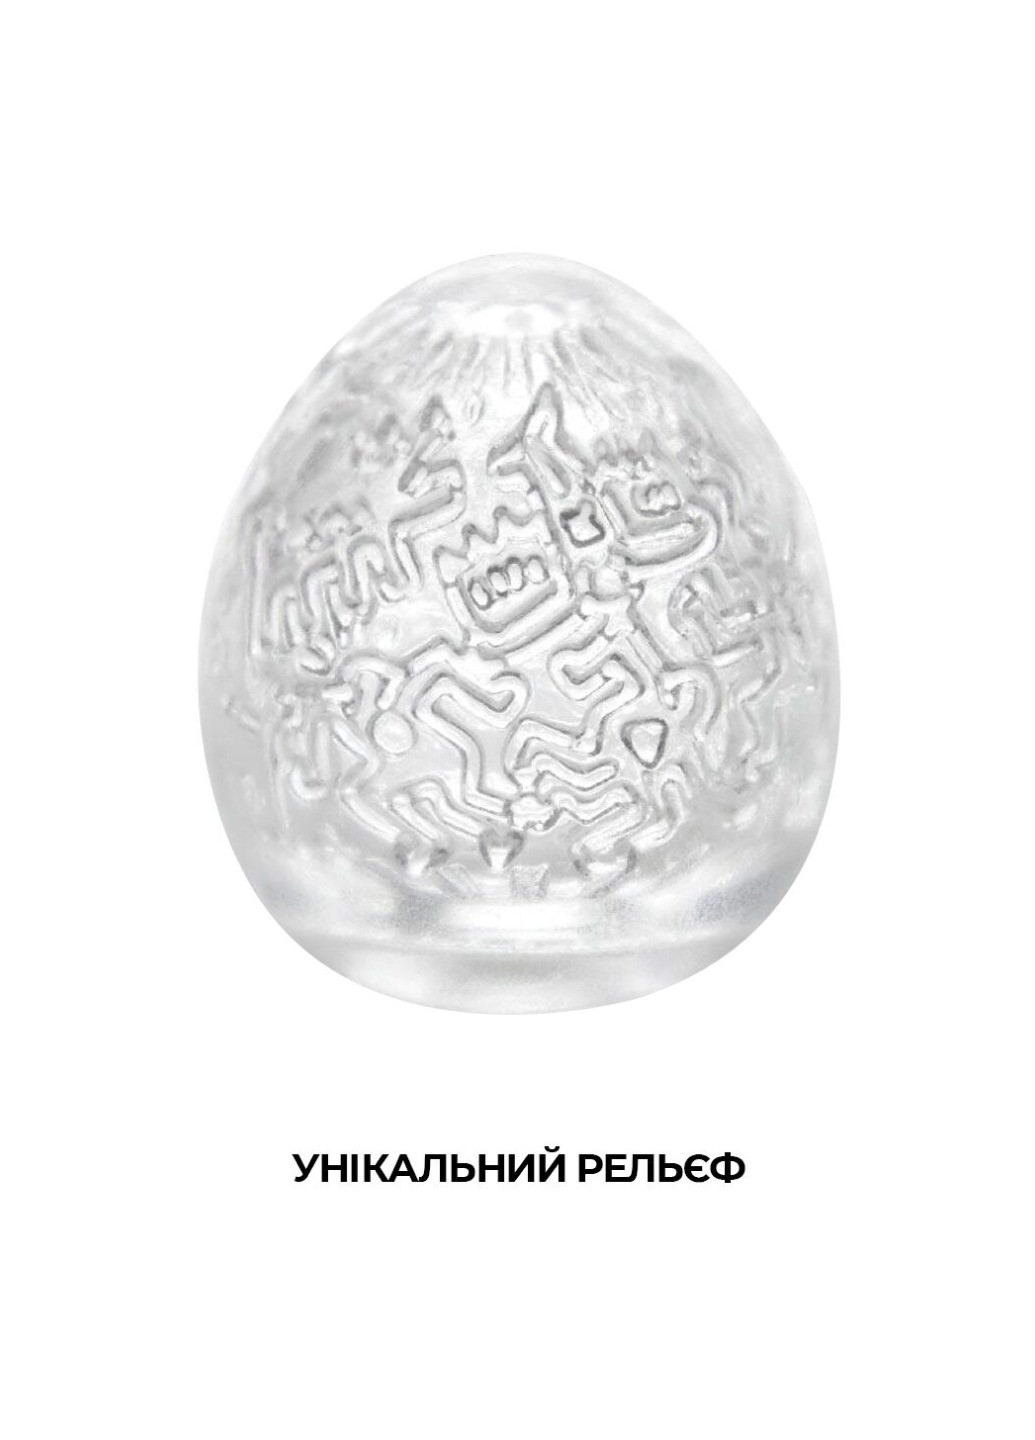 Мастурбатор-яйцо Keith Haring Egg Party Tenga (276325761)